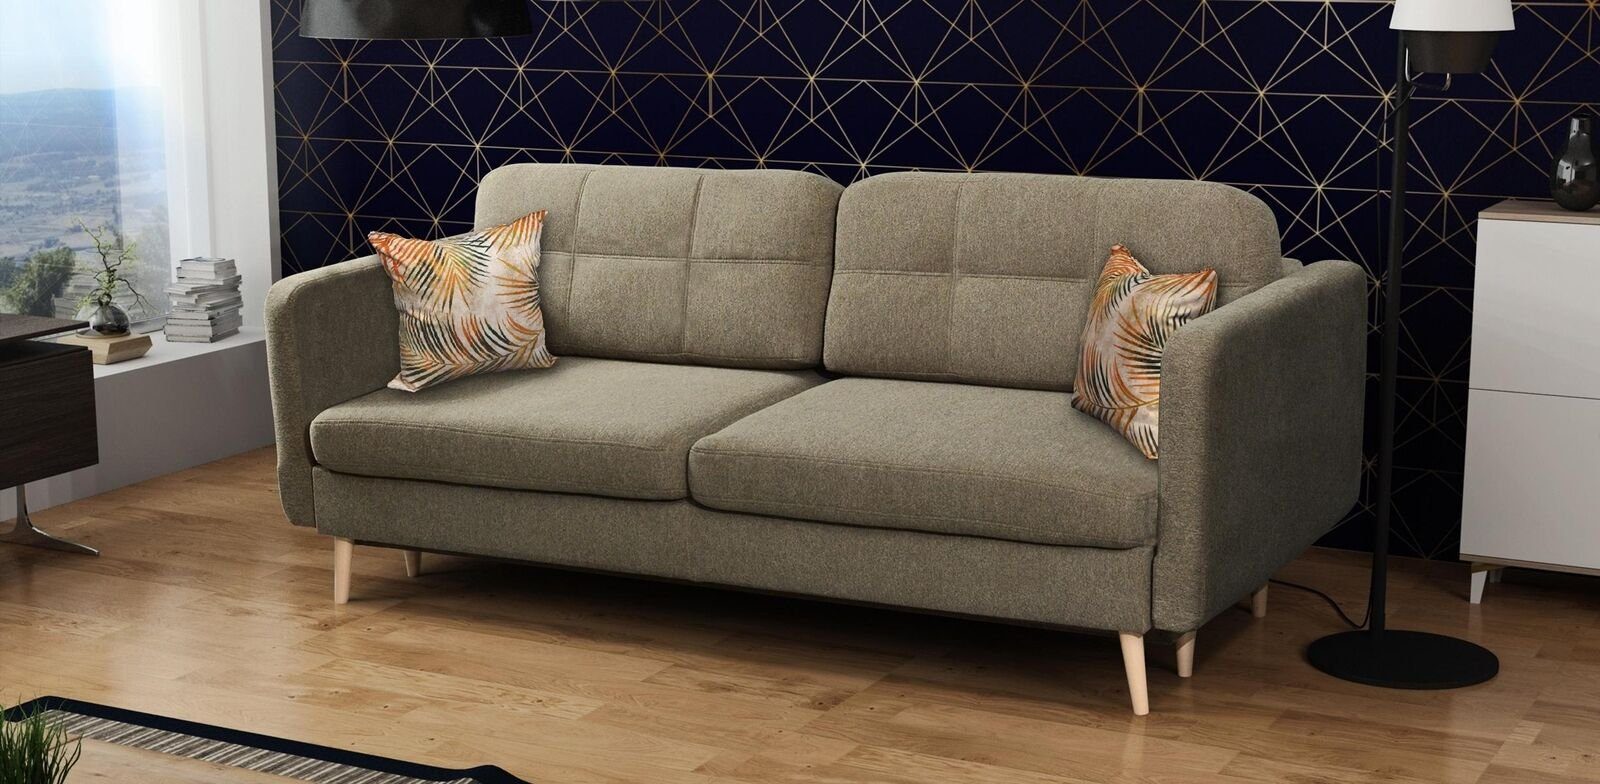 JVmoebel Sofa, Schlafsofa Luxus Polster Braun Designer Blaue Textil Sitzer Möbel Sofa 3